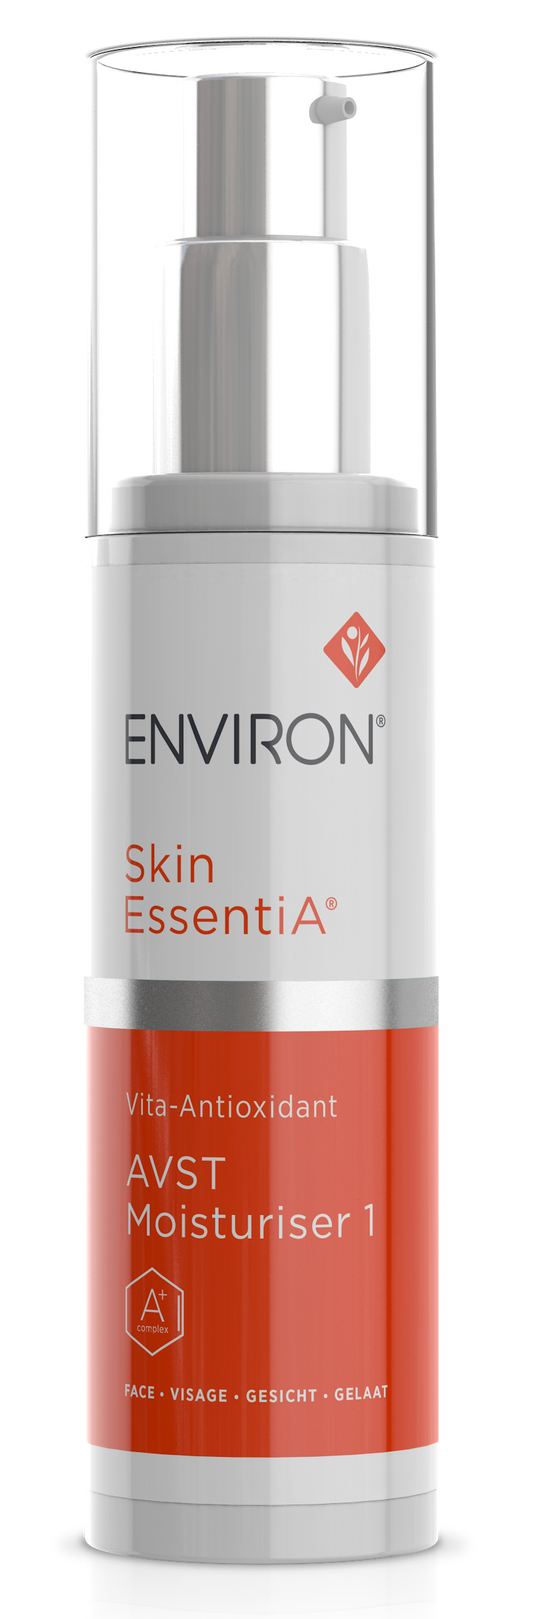 Environ Skin EssentiA Vita-Antioxidant AVST Moisturiser 1